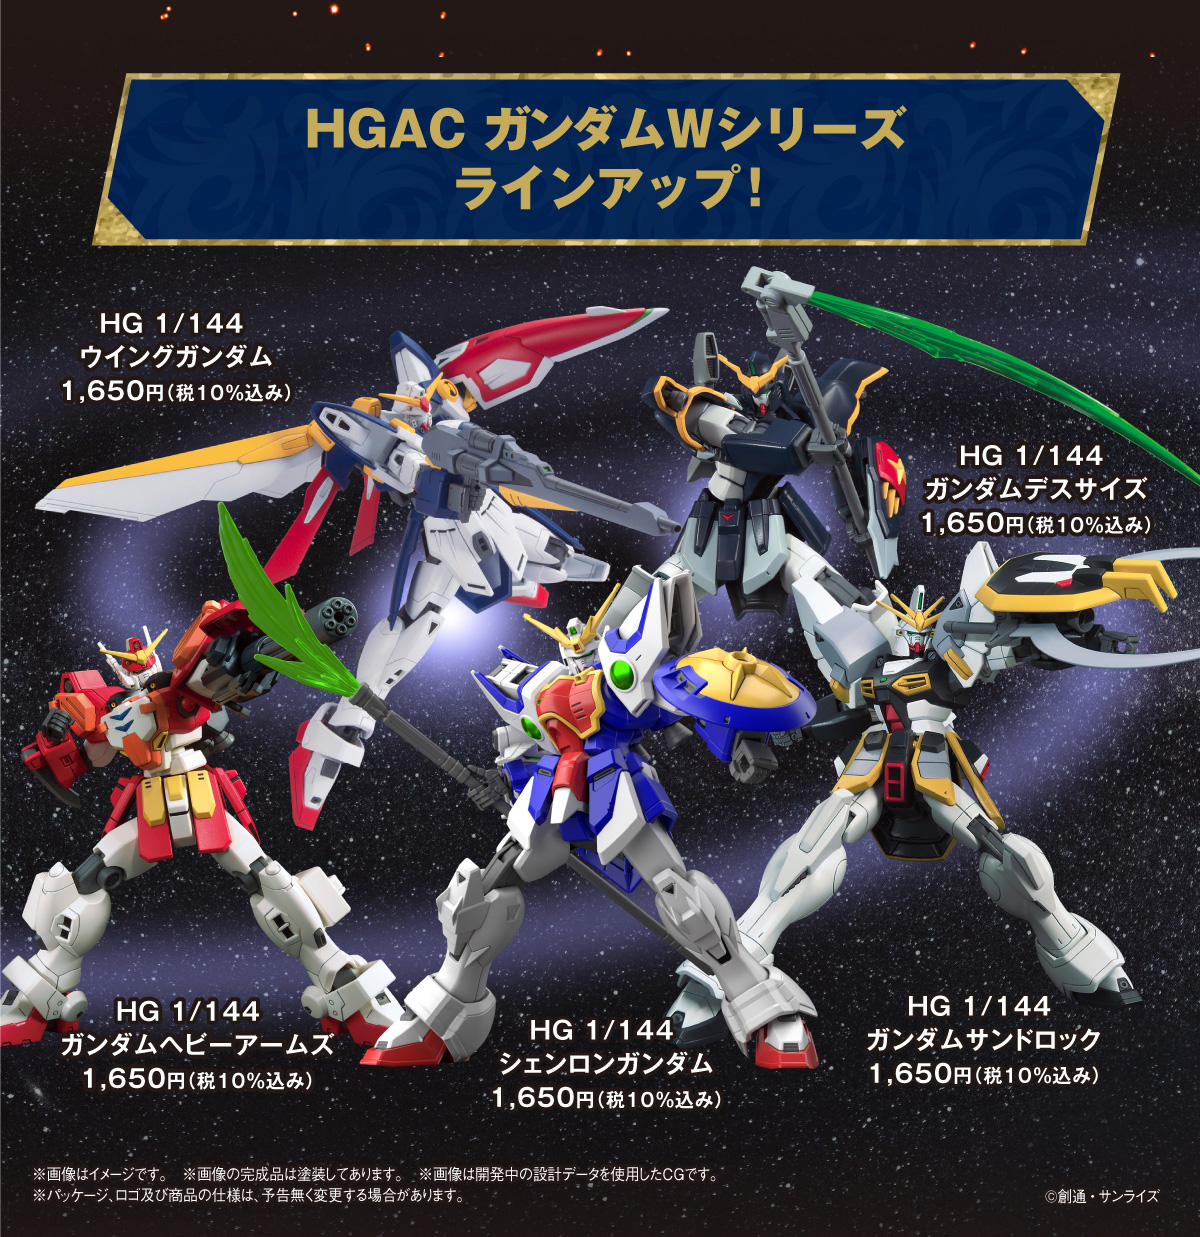 HGAC Gundam W series lineup!